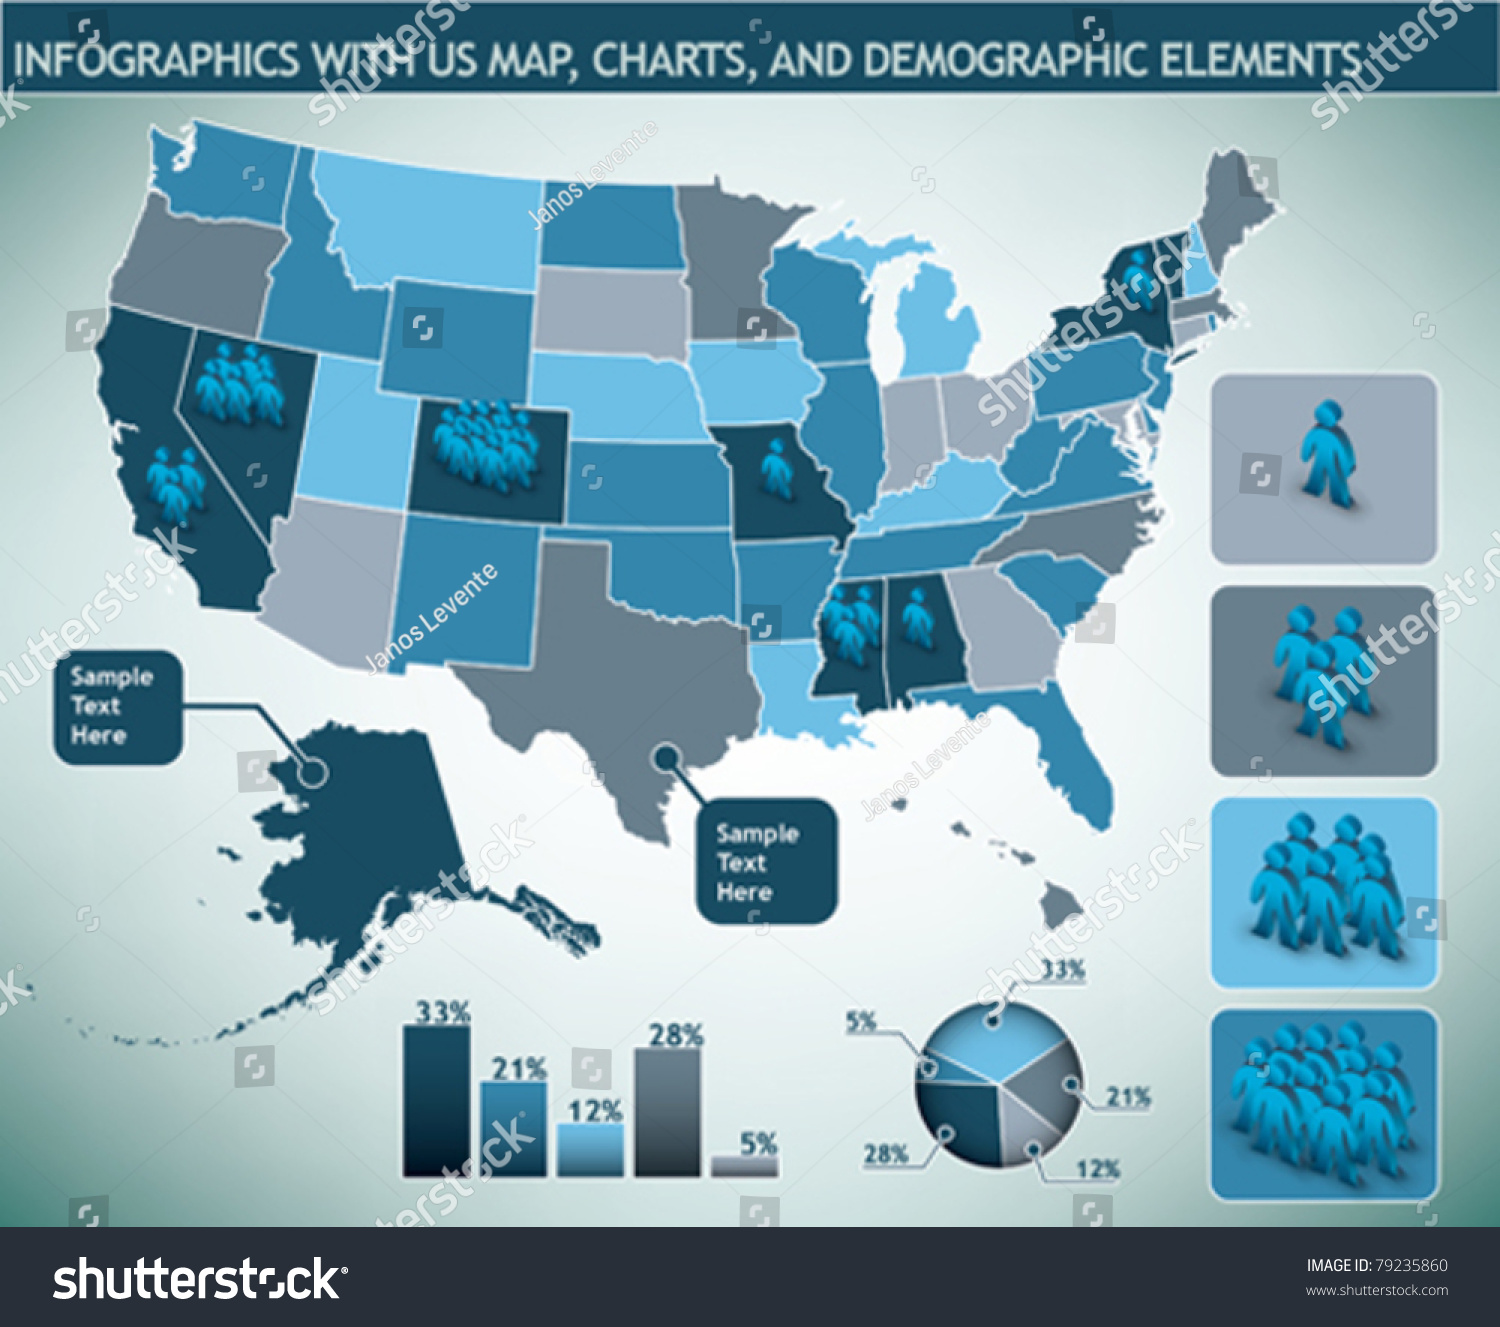 Us element. Карта диаграмма. Map Chart. Demographic Reports.